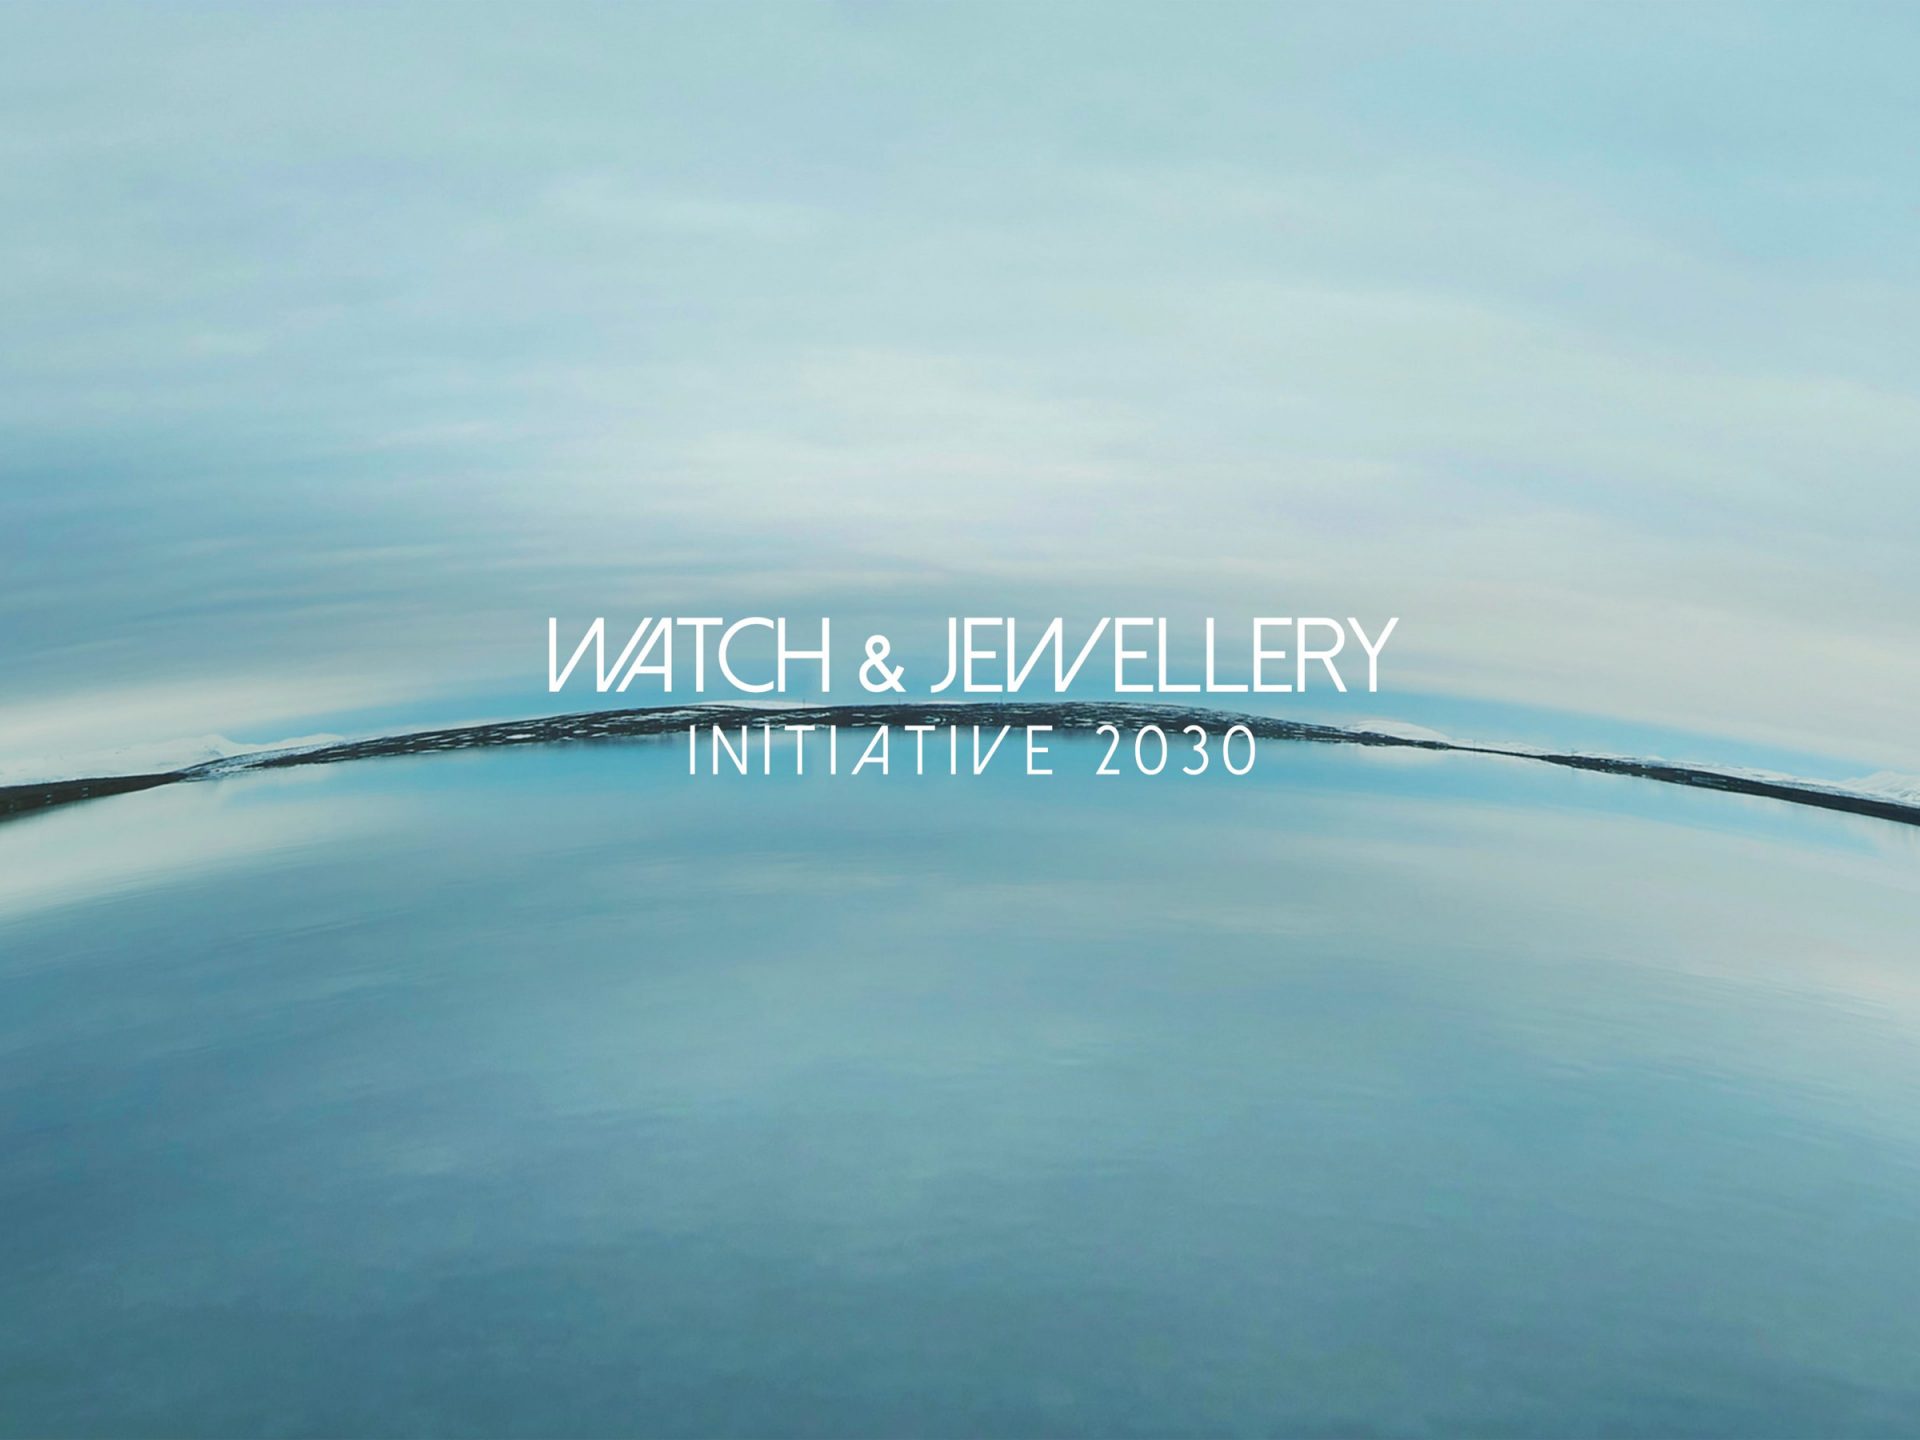 Watch and jewellery initiative 2030 logo